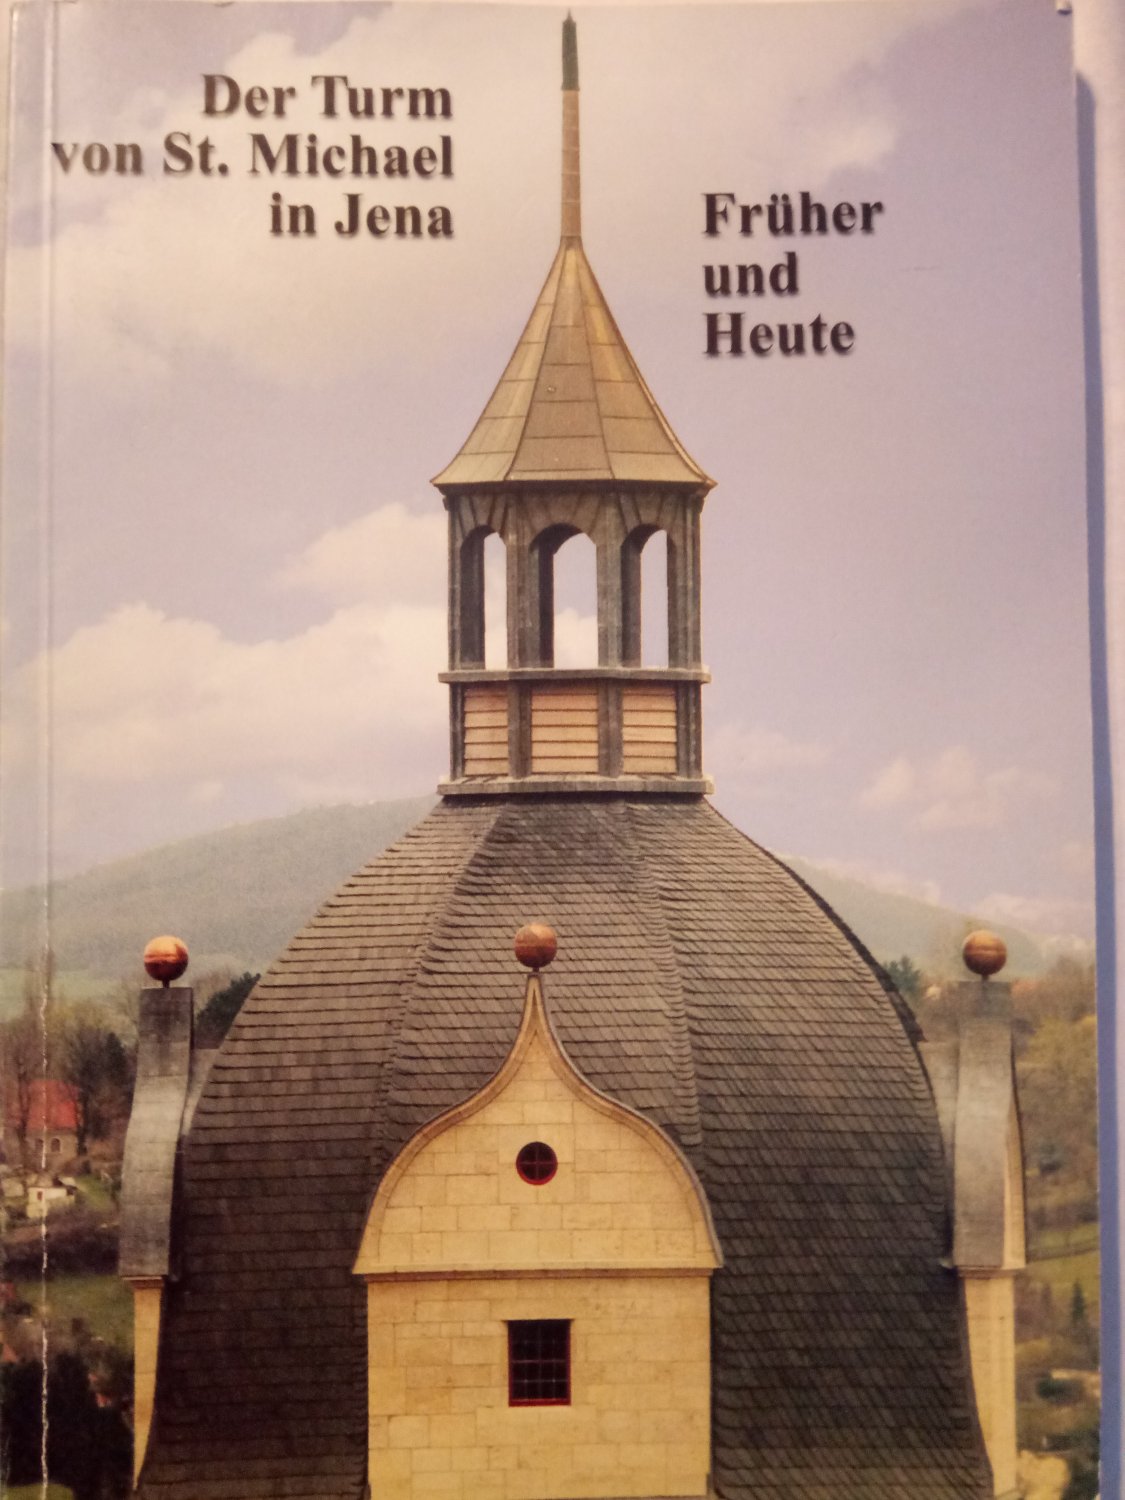 Der Turm von St. Michael in Jena - Früher und Heute. Festschrift zum Abschluss der Sanierung des Turmes von St. Michael im Sommer 2001 - Jahreis, Gerhard